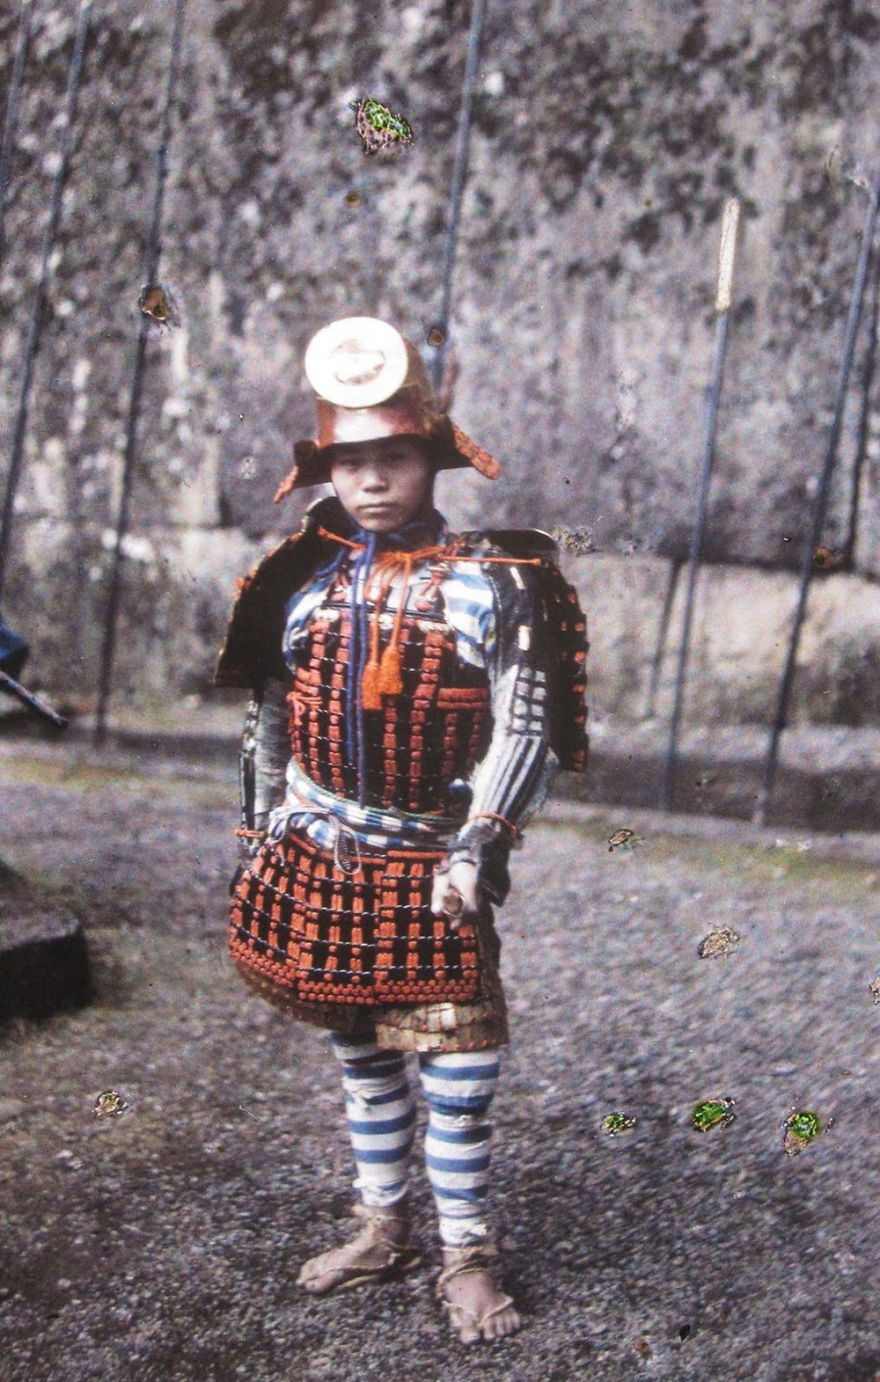 Apan (Young Samurai), 1912